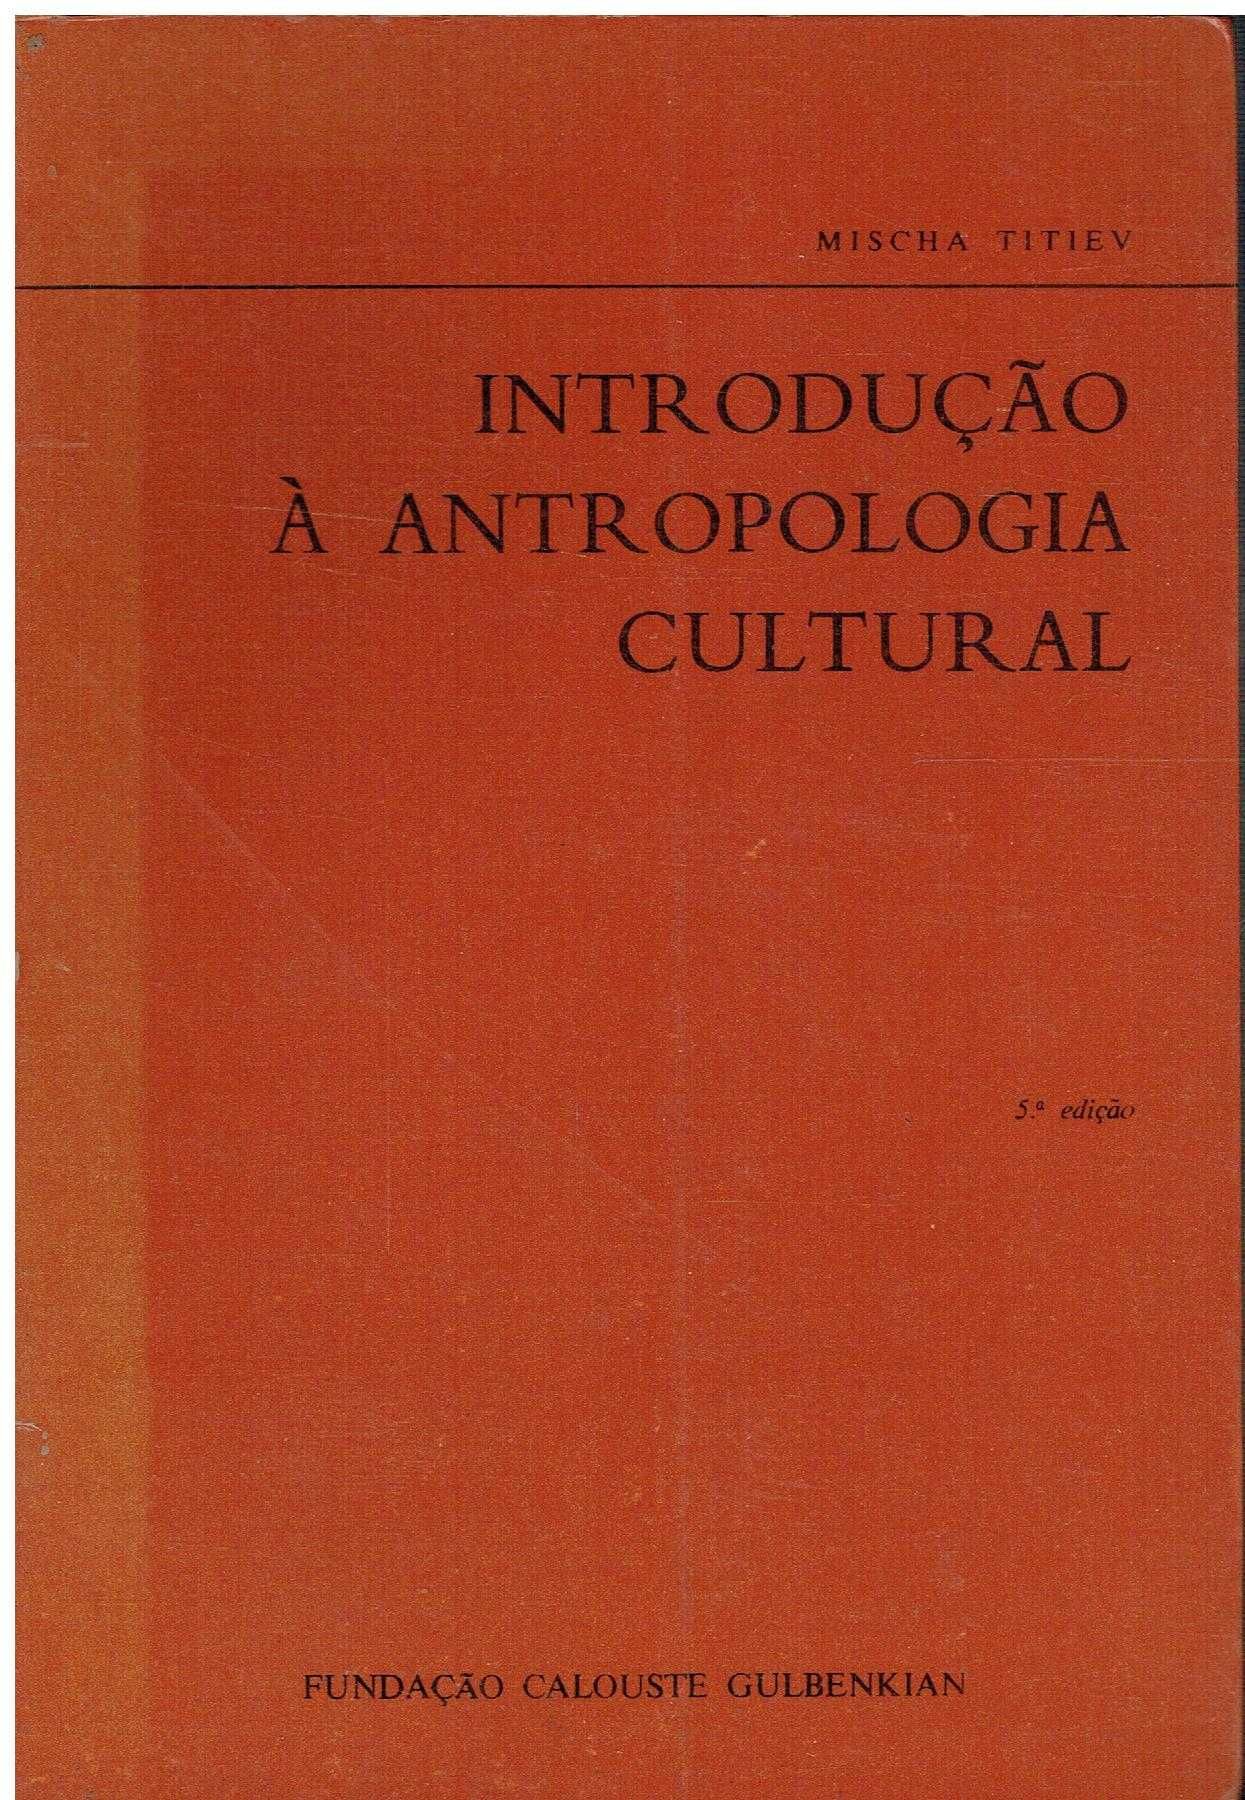 7453

Introdução à Antropologia Cultural - 
de Mischa Titiev